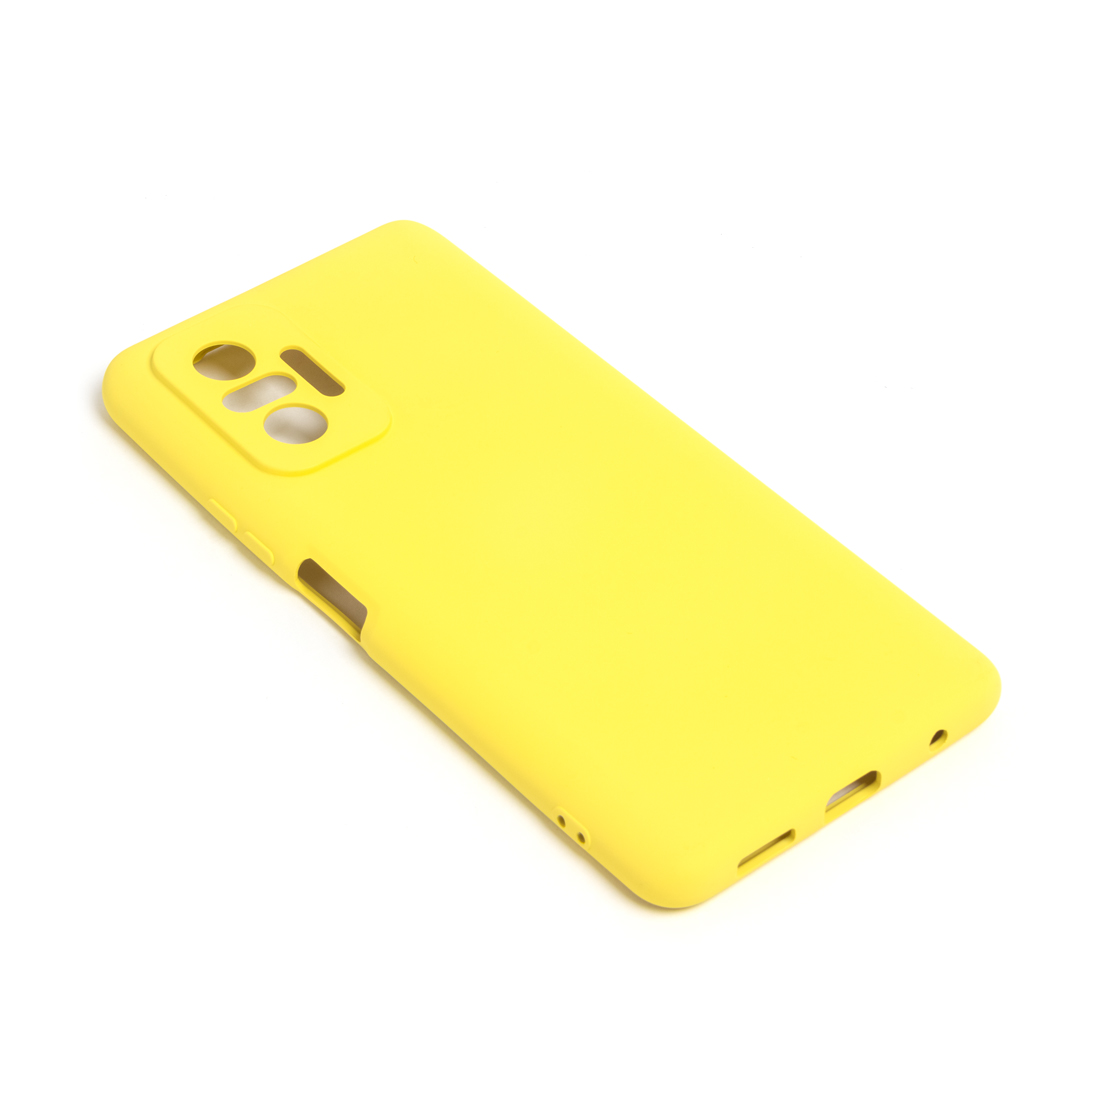 картинка Чехол для телефона X-Game XG-HS22 для Redmi Note 10S Силиконовый Жёлтый от магазина itmag.kz